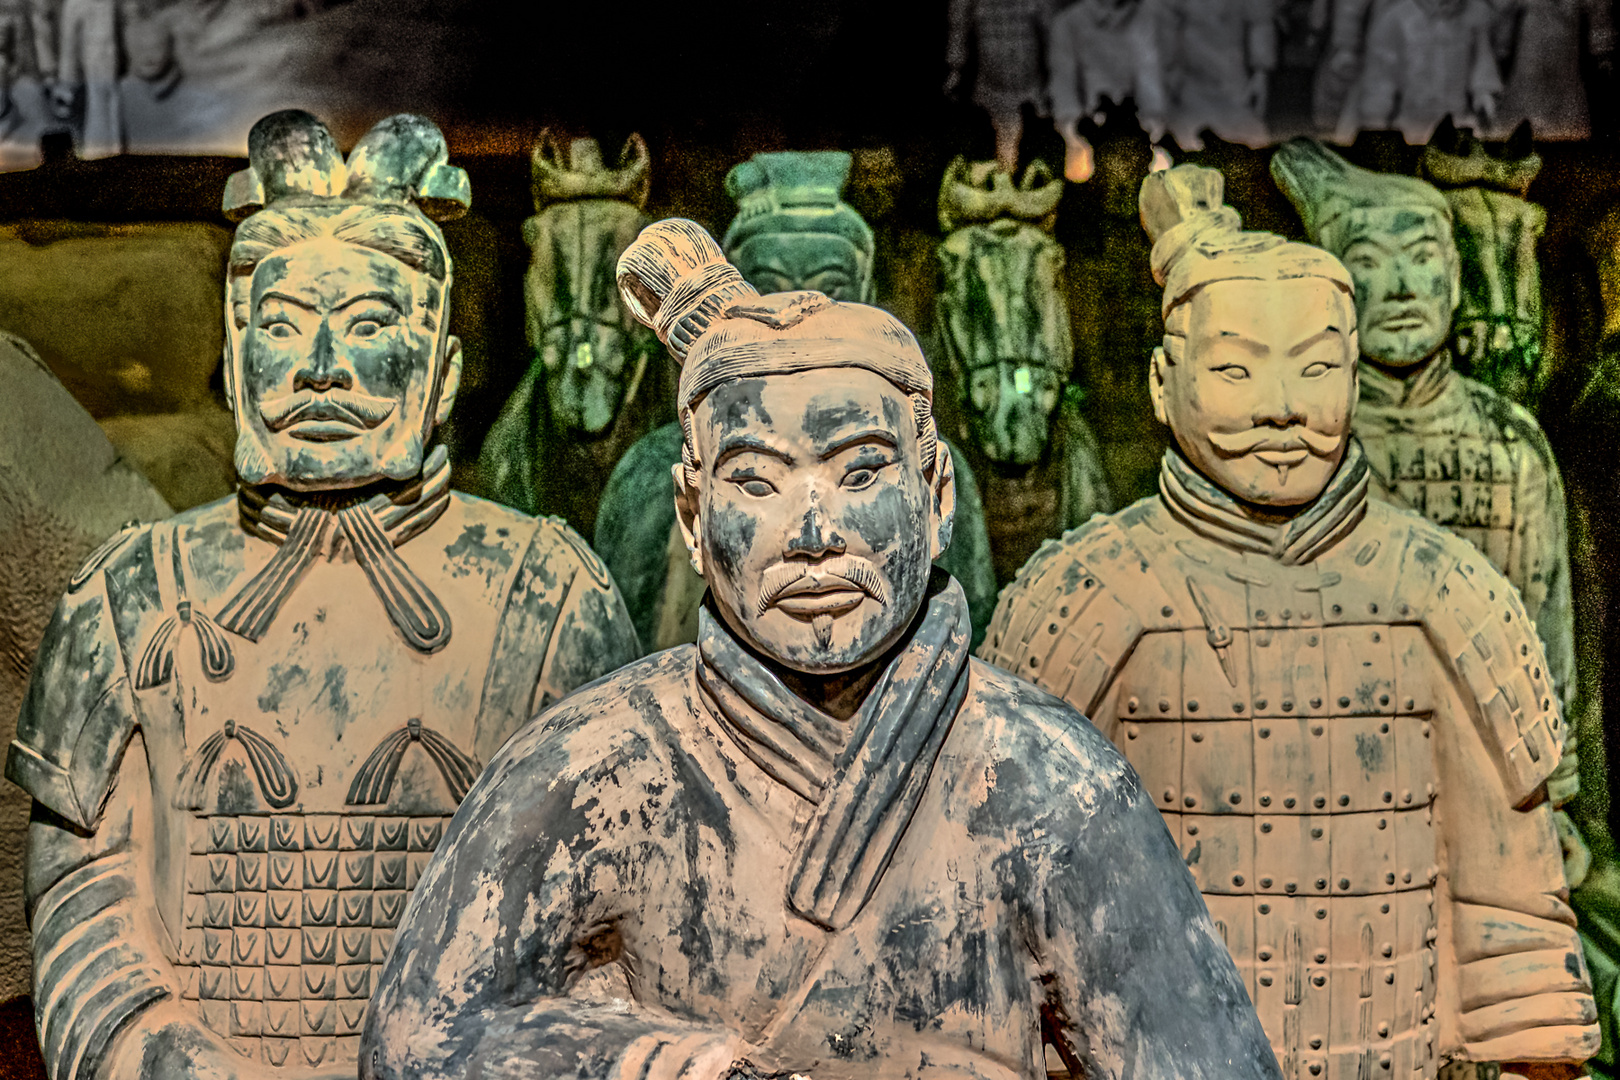 Figuren der Terracotta-Armee aus Xi’an